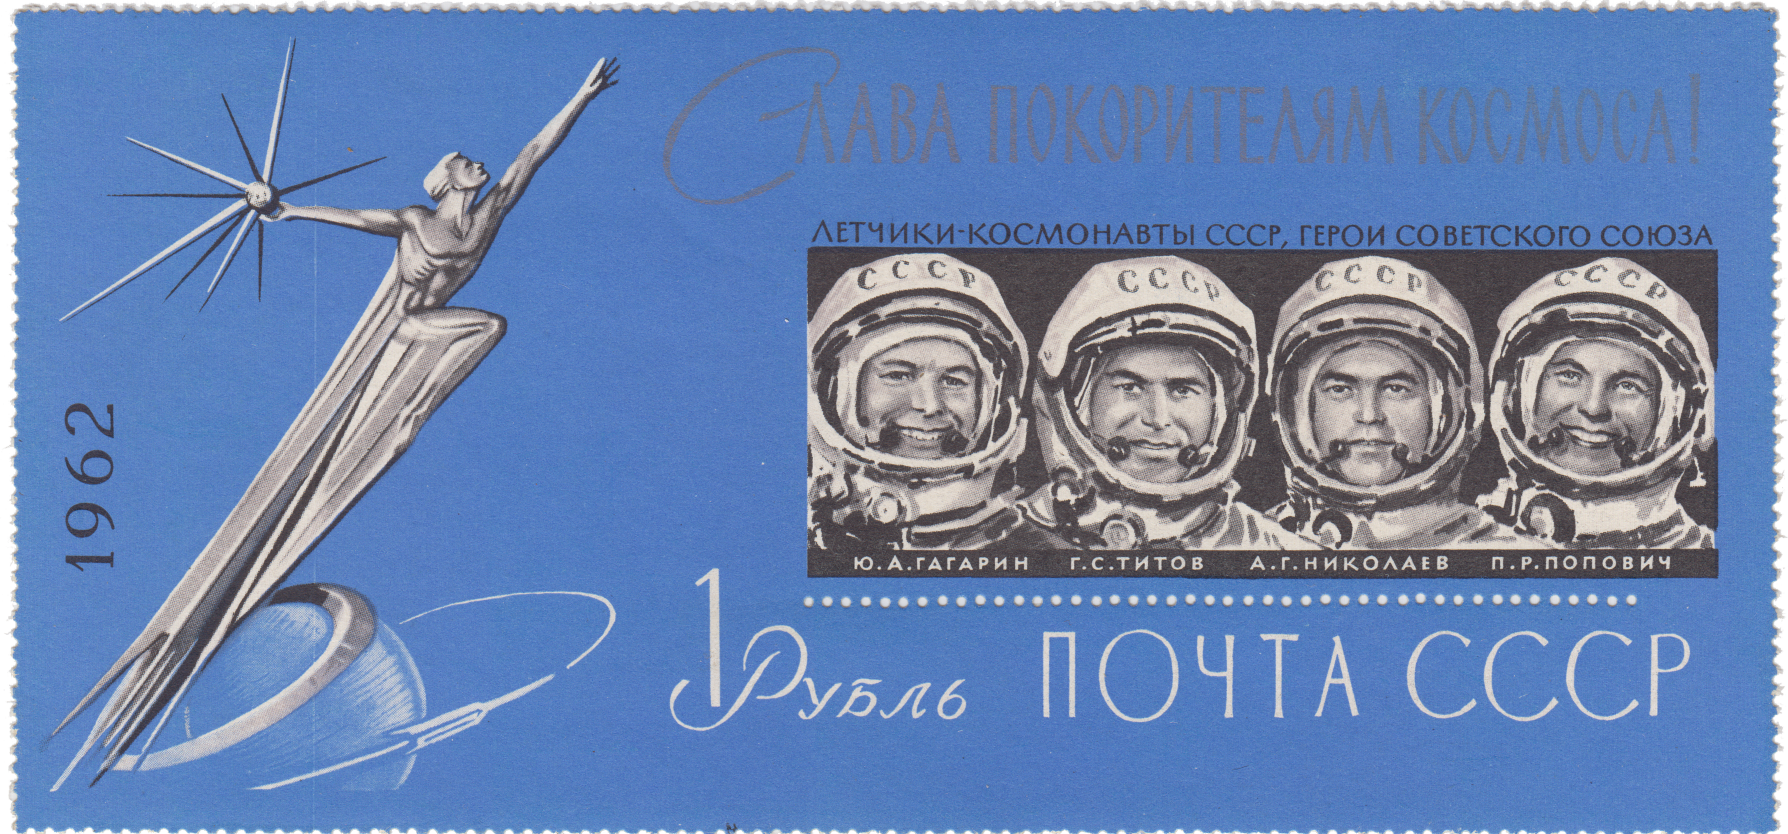 Групповой портрет космонавтов Ю. А. Гагарина, Г. С. Титова, А. Г. Николаева,  и П. Р. Поповича